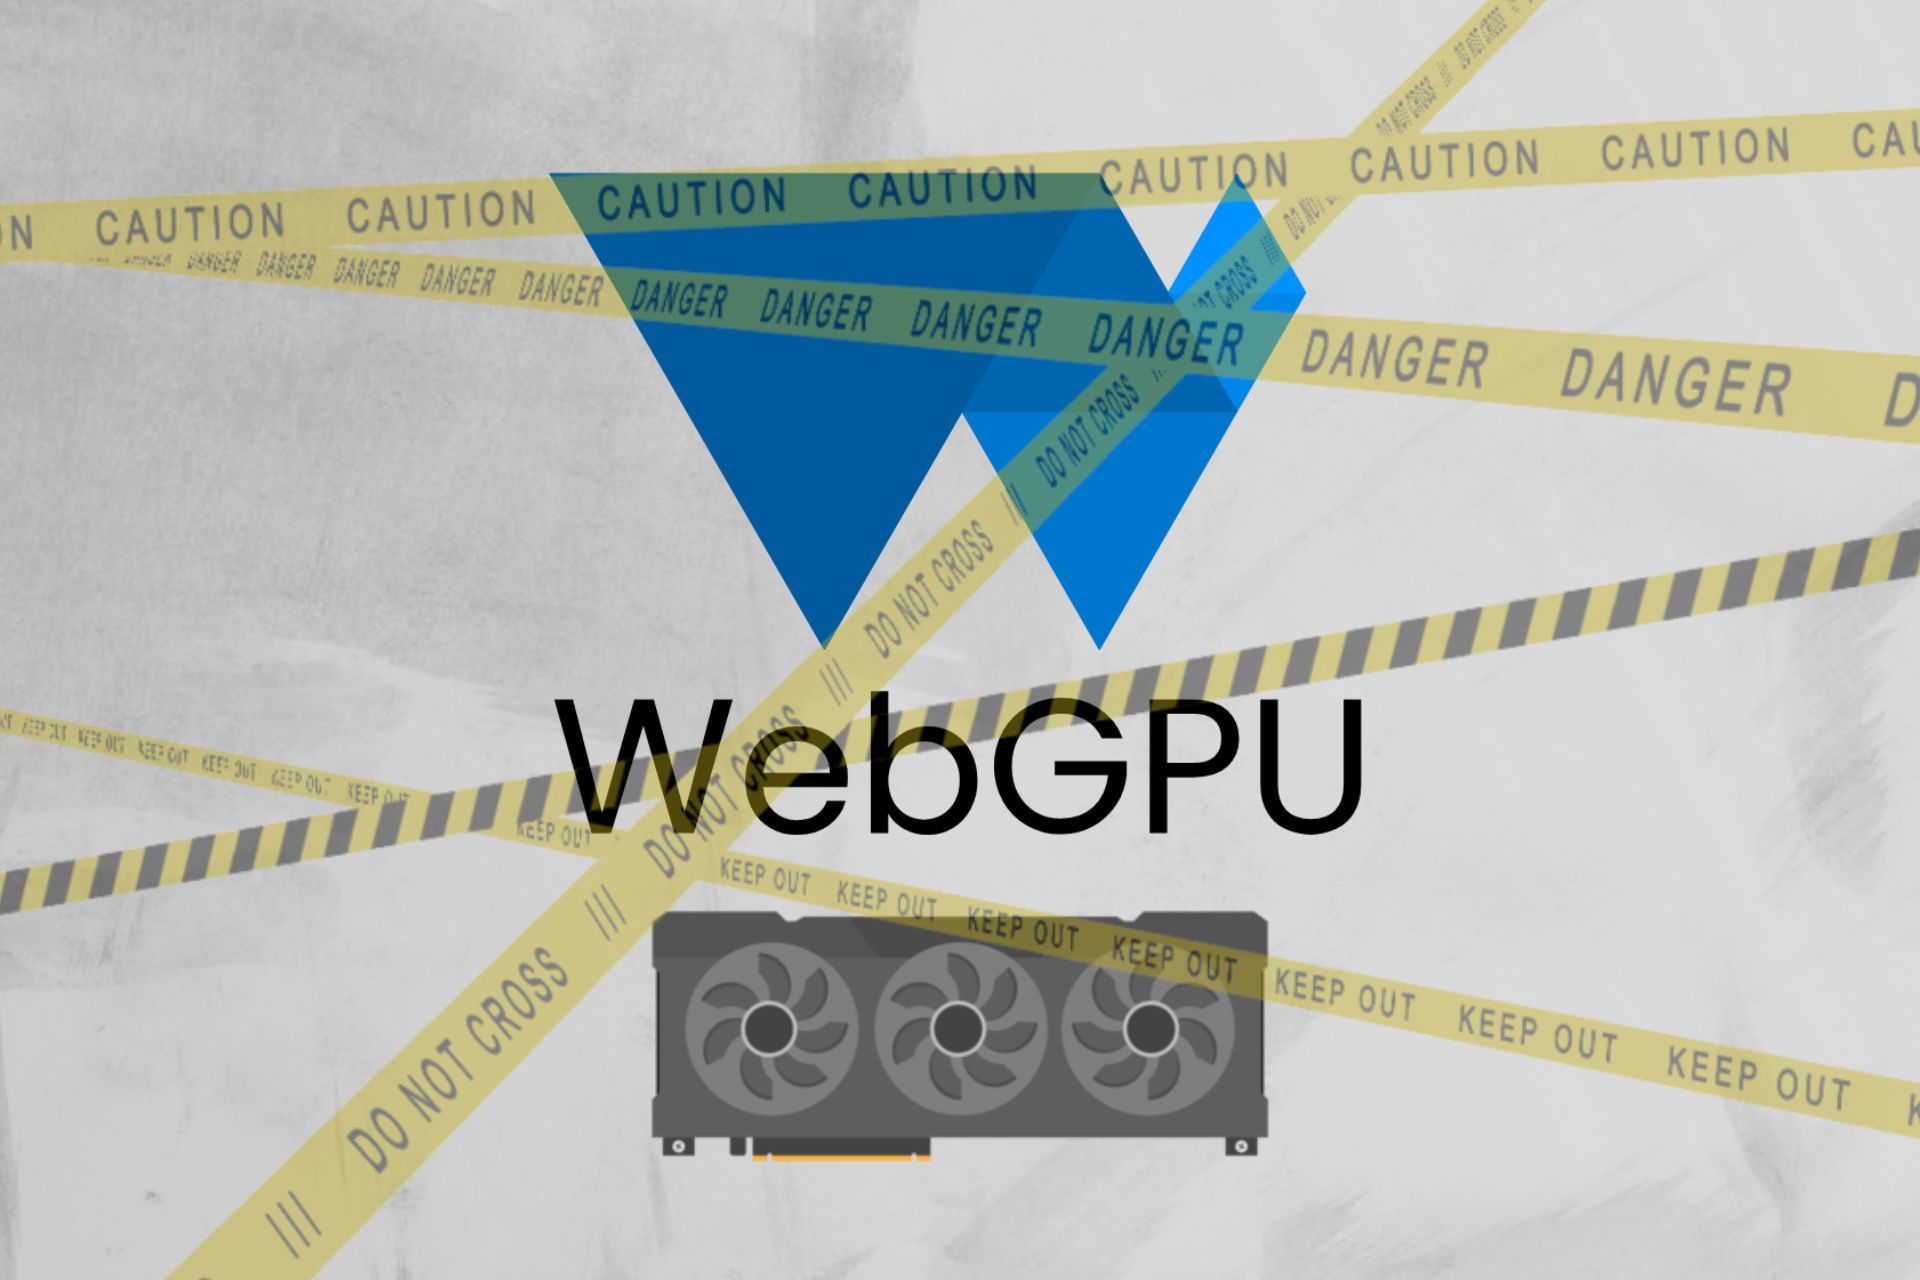 A WebGPU API on top of a GPU behind danger signs